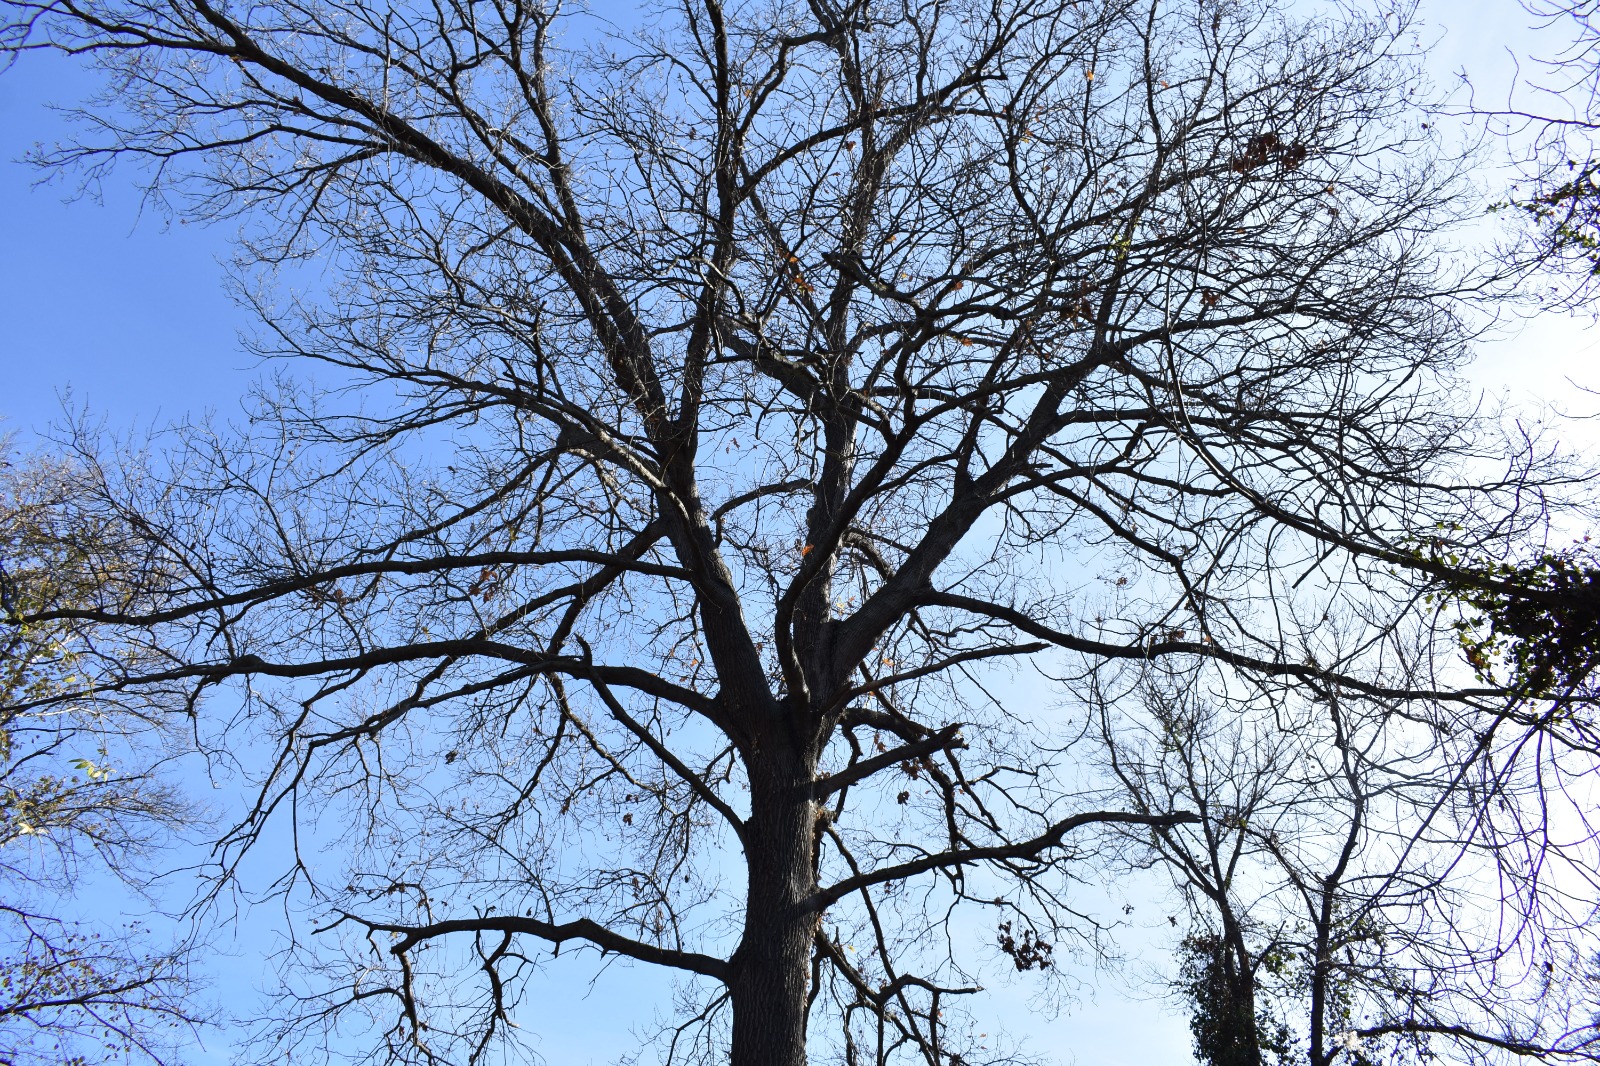 Policoro, la grande quercia di Bosco Pantano nell’elenco degli alberi monumentali d’Italia